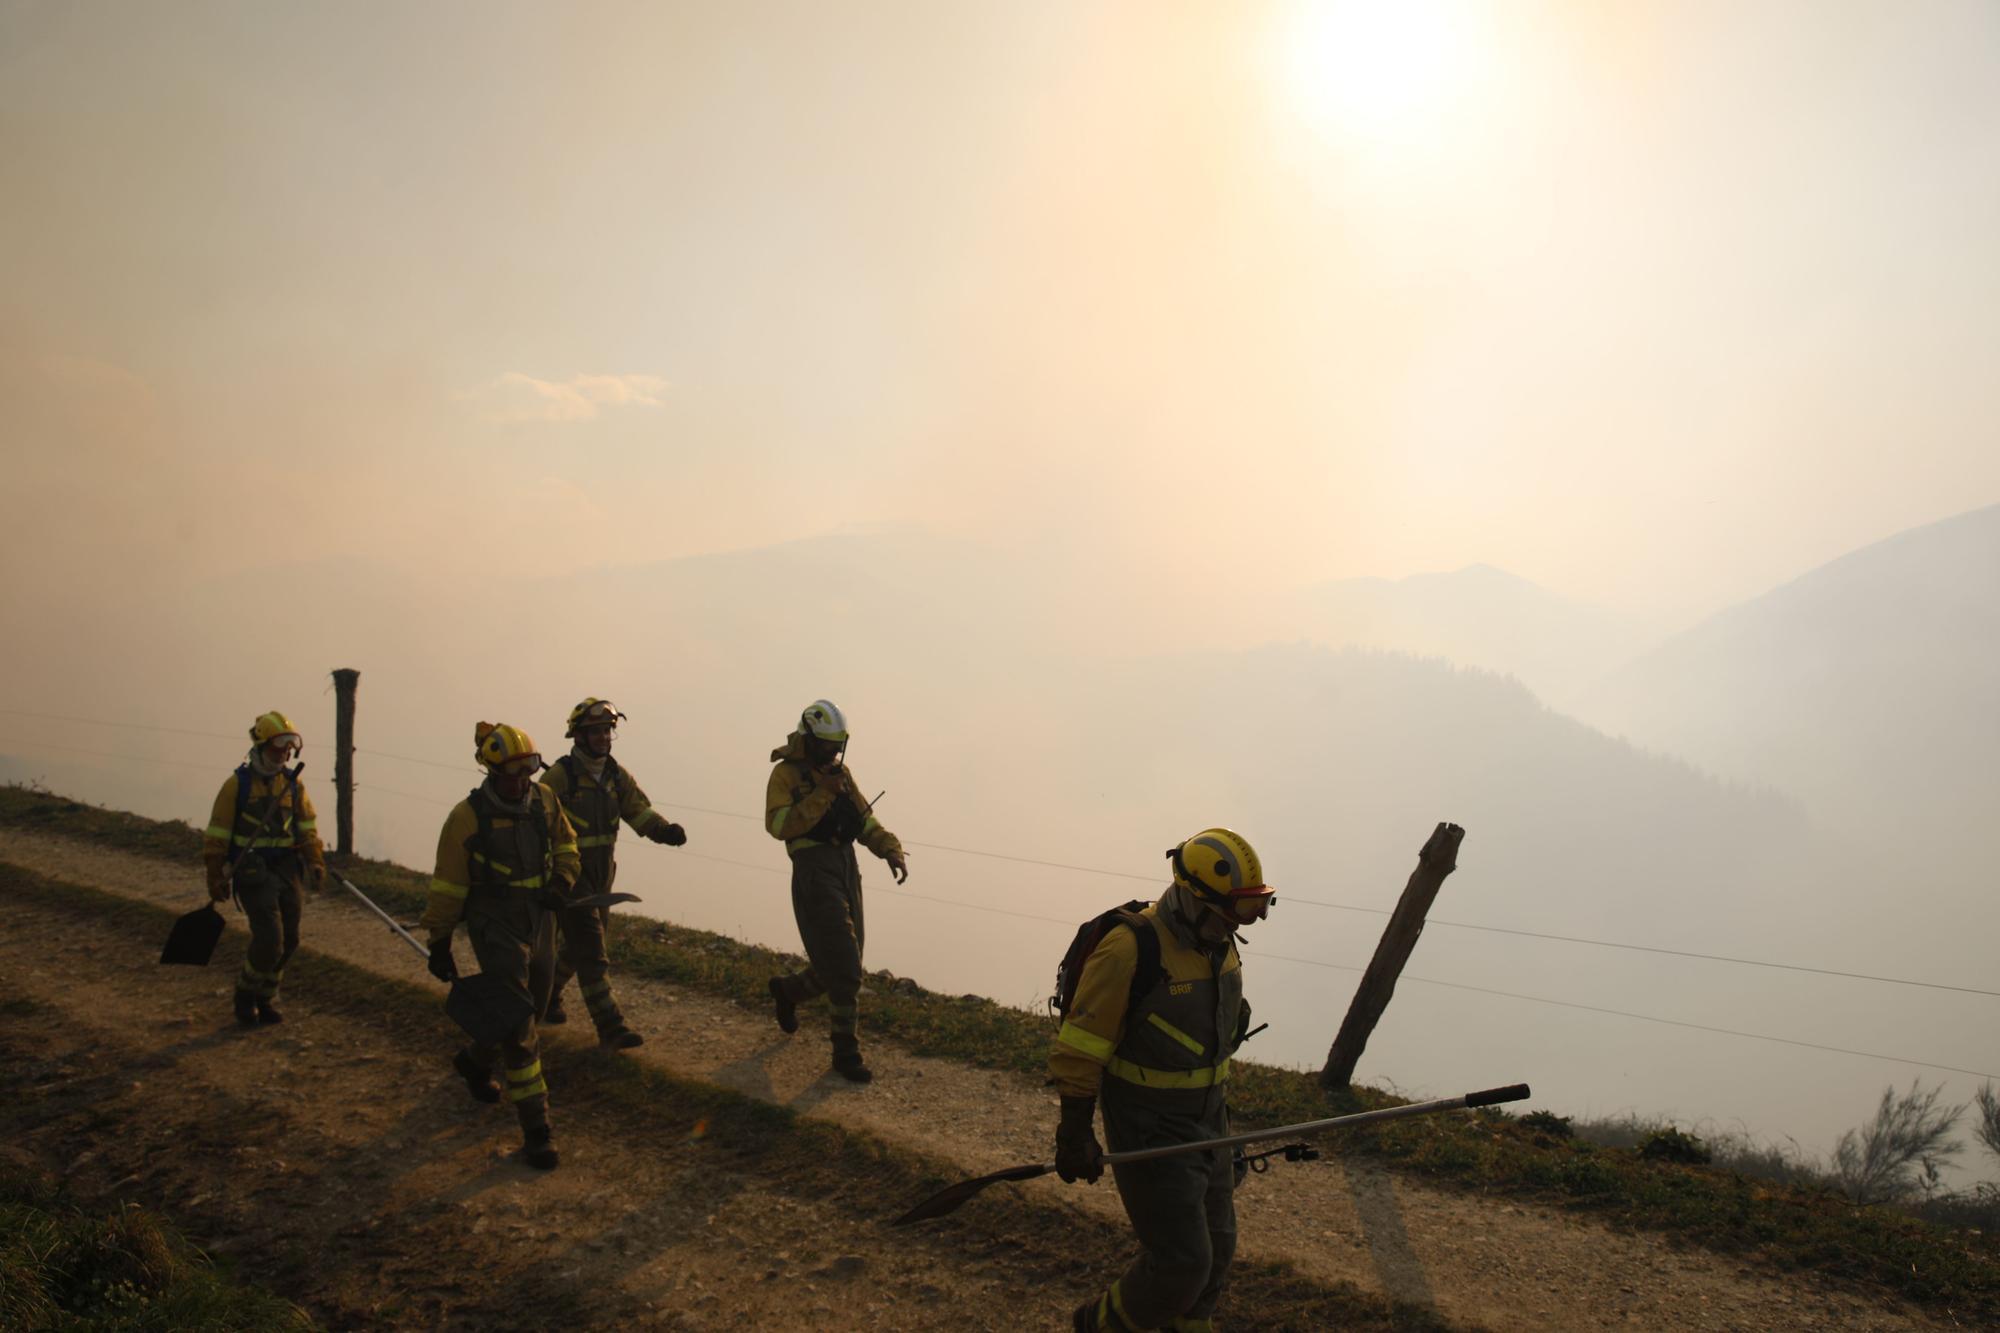 Las imágenes del preocupante incendio en Tineo